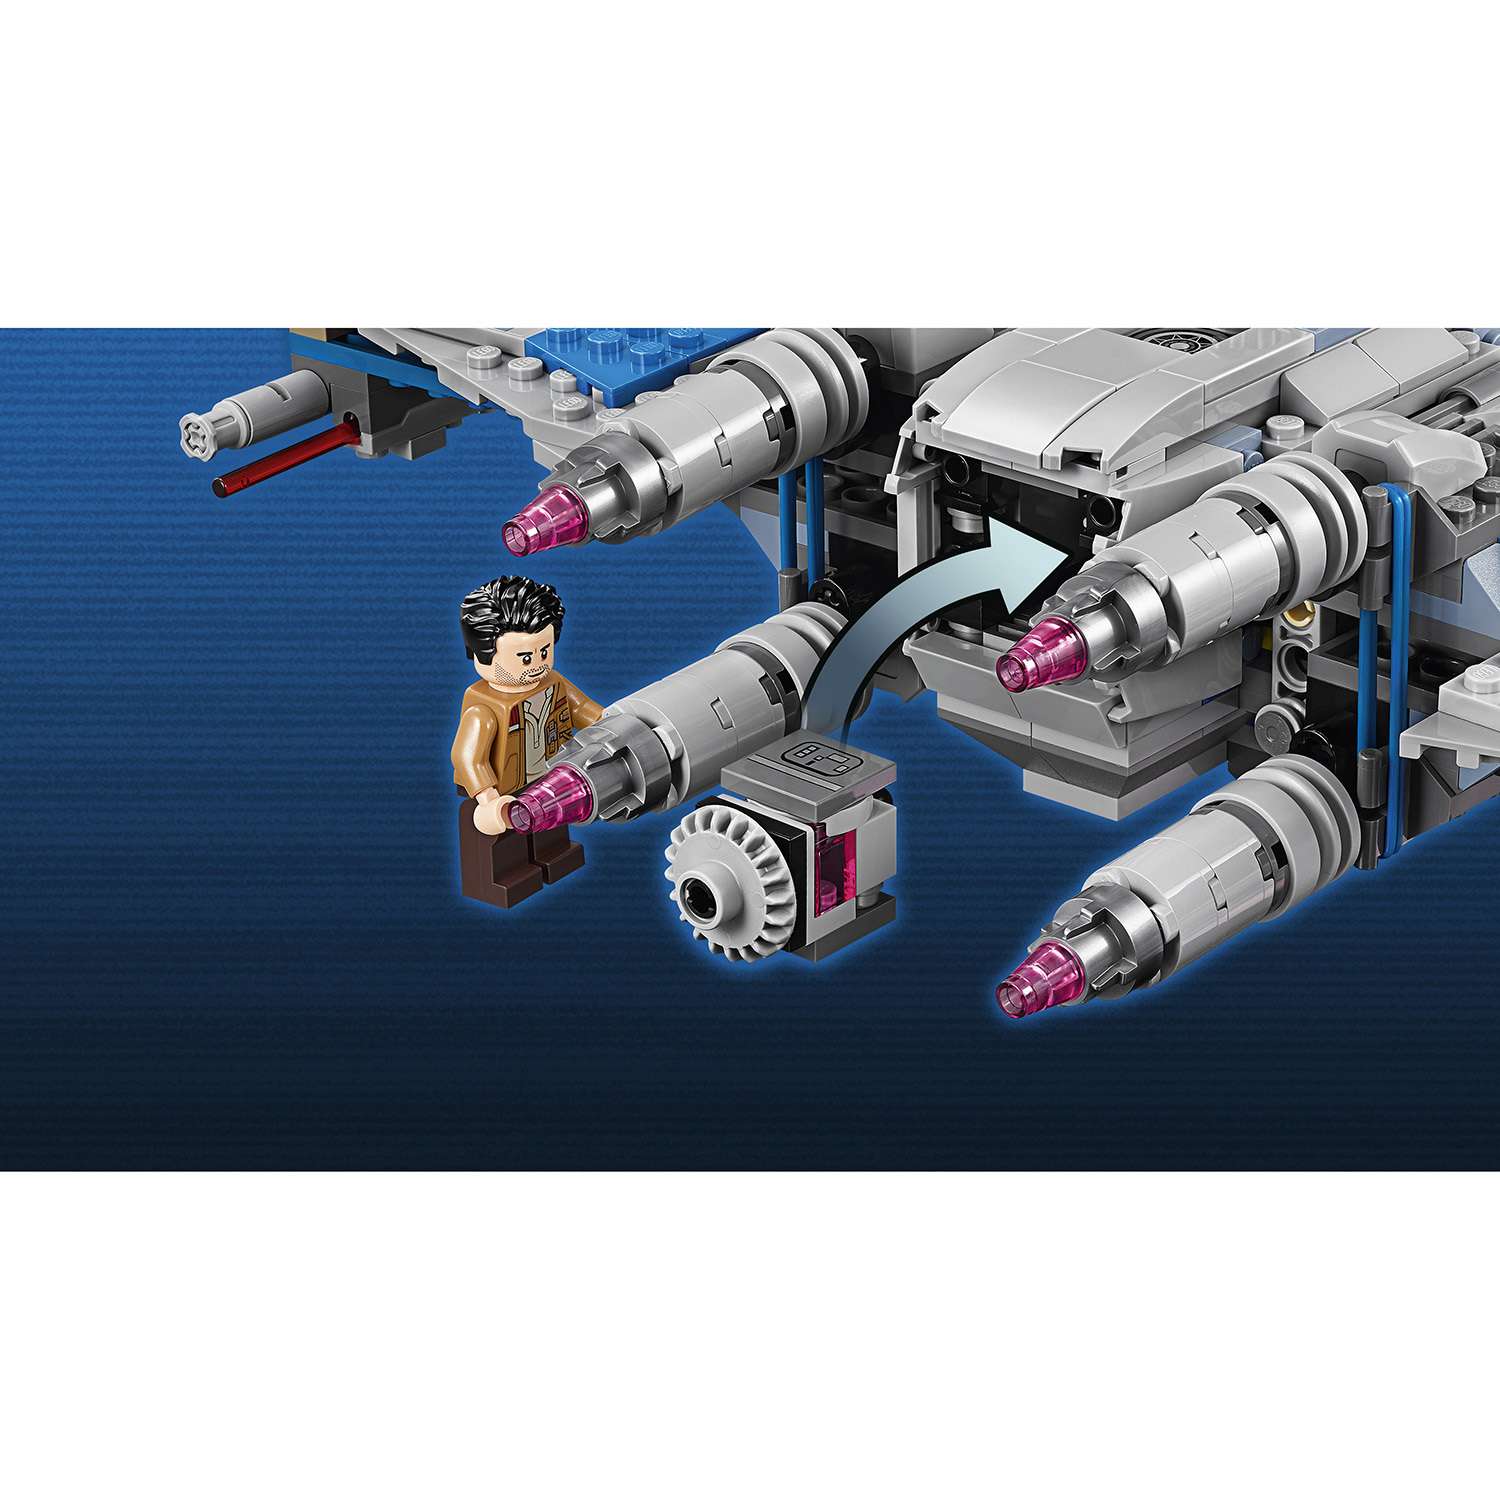 Конструктор LEGO Star Wars TM Истребитель Сопротивления типа Икс (75149) - фото 8